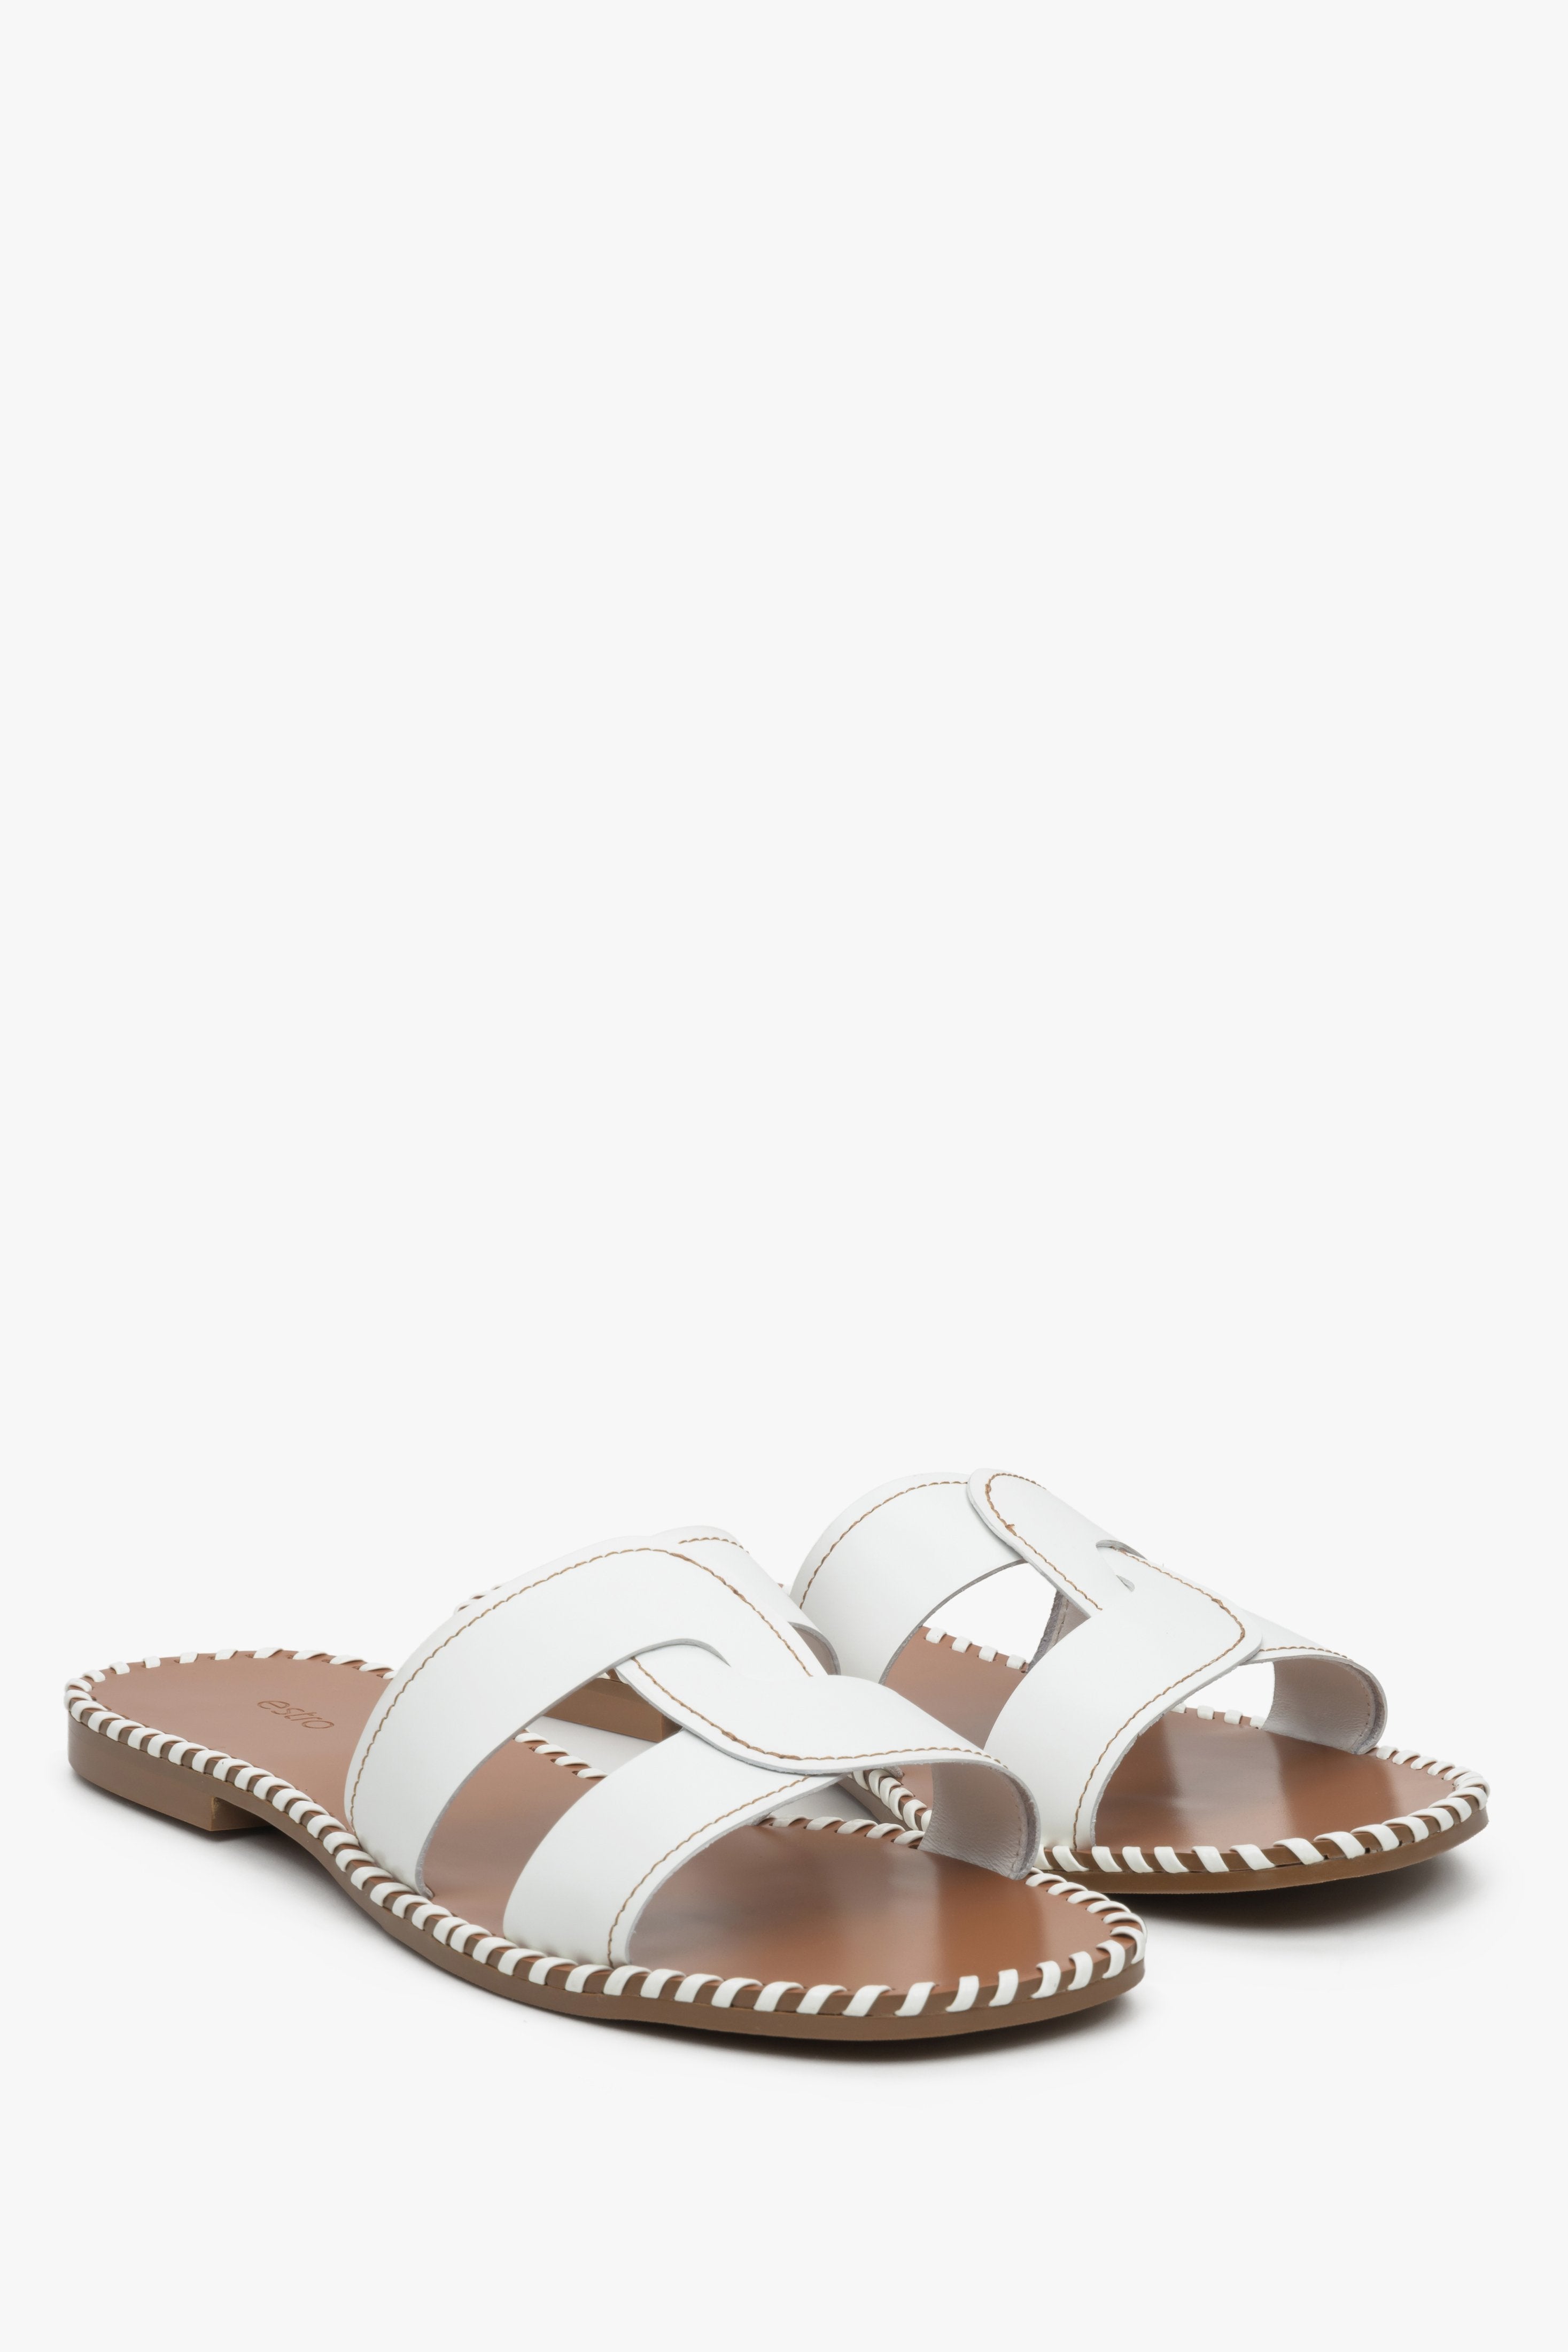 Skórzane klapki damskie na płaskim obcasie Estro w kolorze białym - zbliżenie na linię palców butów.